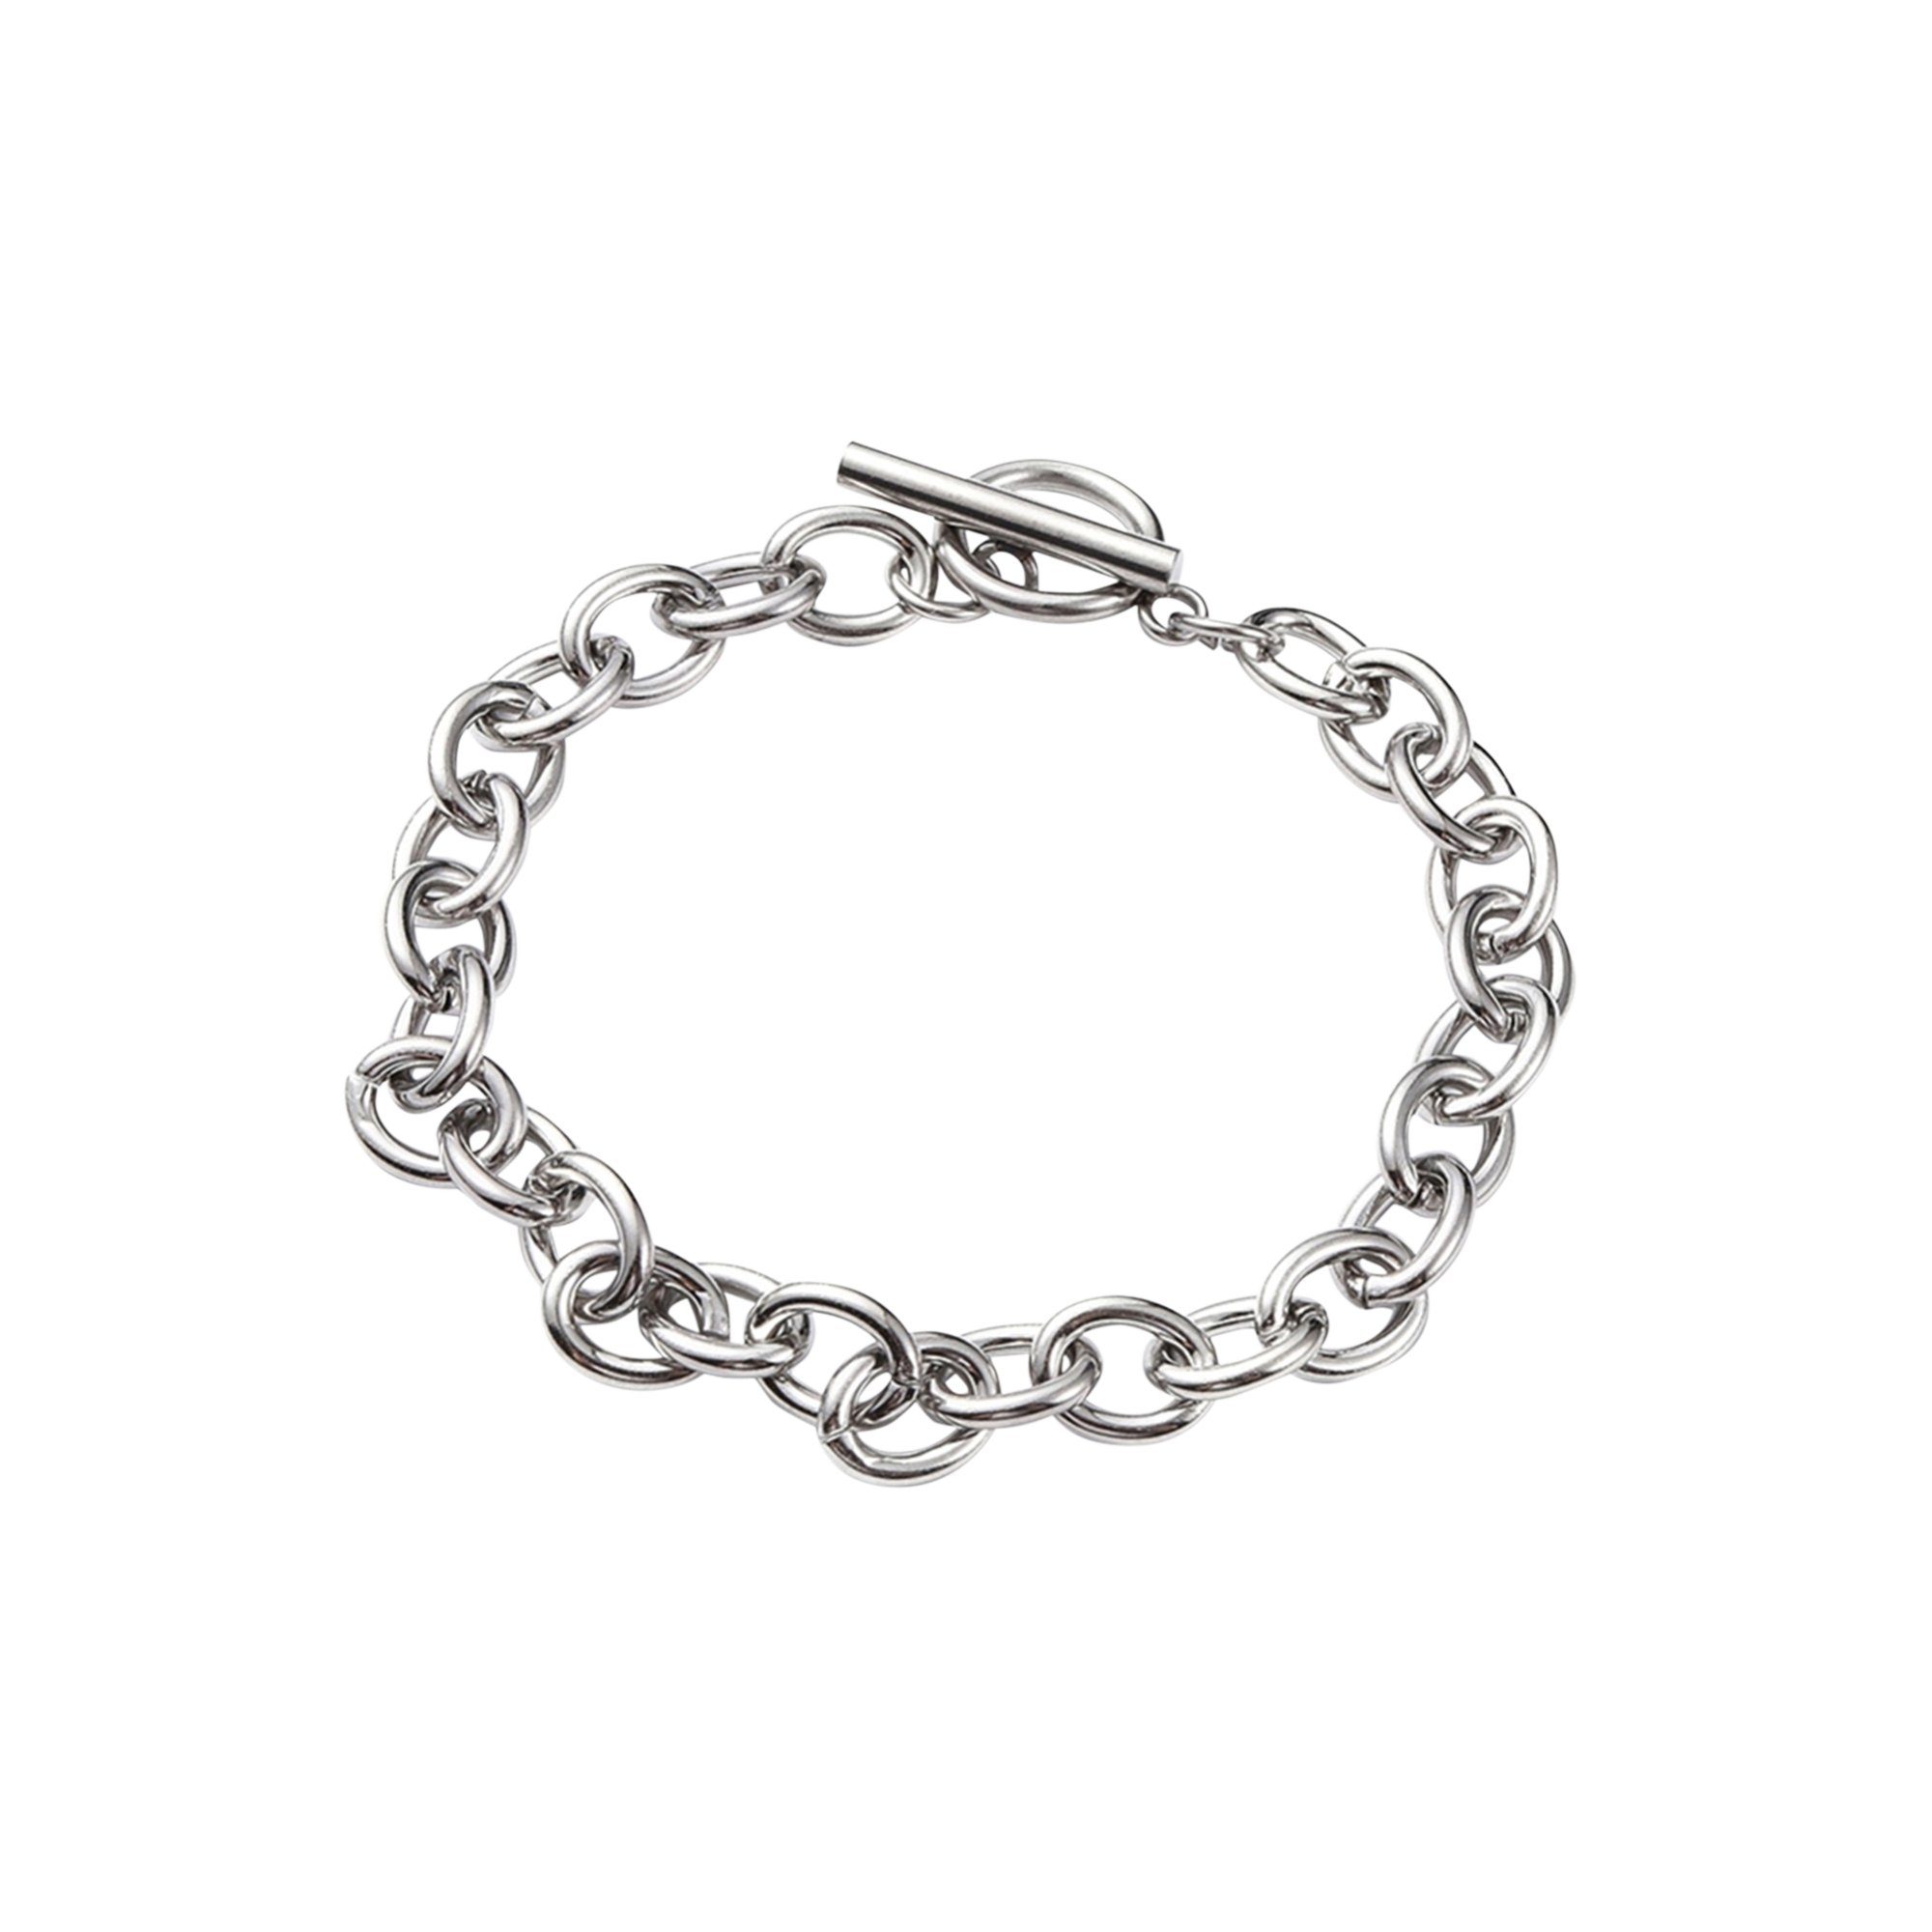 Heideman Armband Arundo poliert (Armband, inkl. Geschenkverpackung), Armkette für Frauen | Edelstahlarmbänder